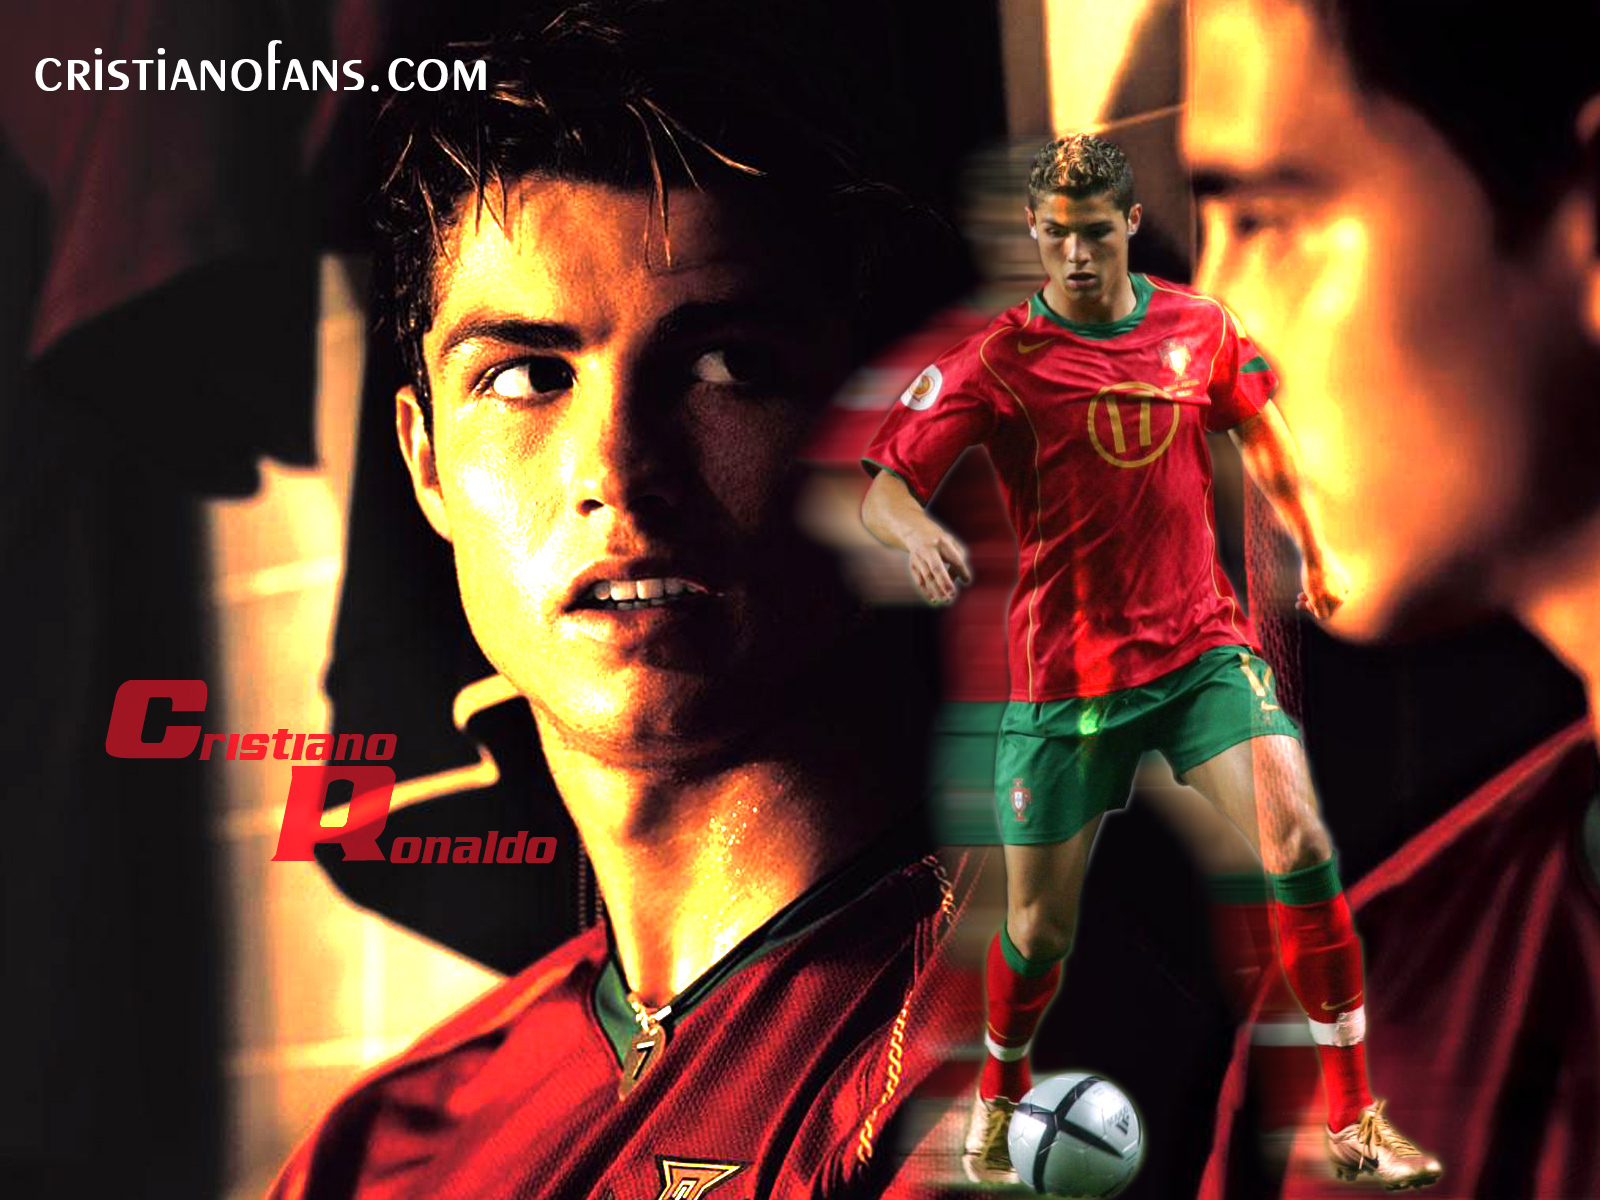 http://2.bp.blogspot.com/_BFYlnQUsPgo/TPqvTbE_HrI/AAAAAAAAA1E/UQd4tiv0jpg/s1600/Cristiano-Ronaldo-Wallpaper-015.jpg